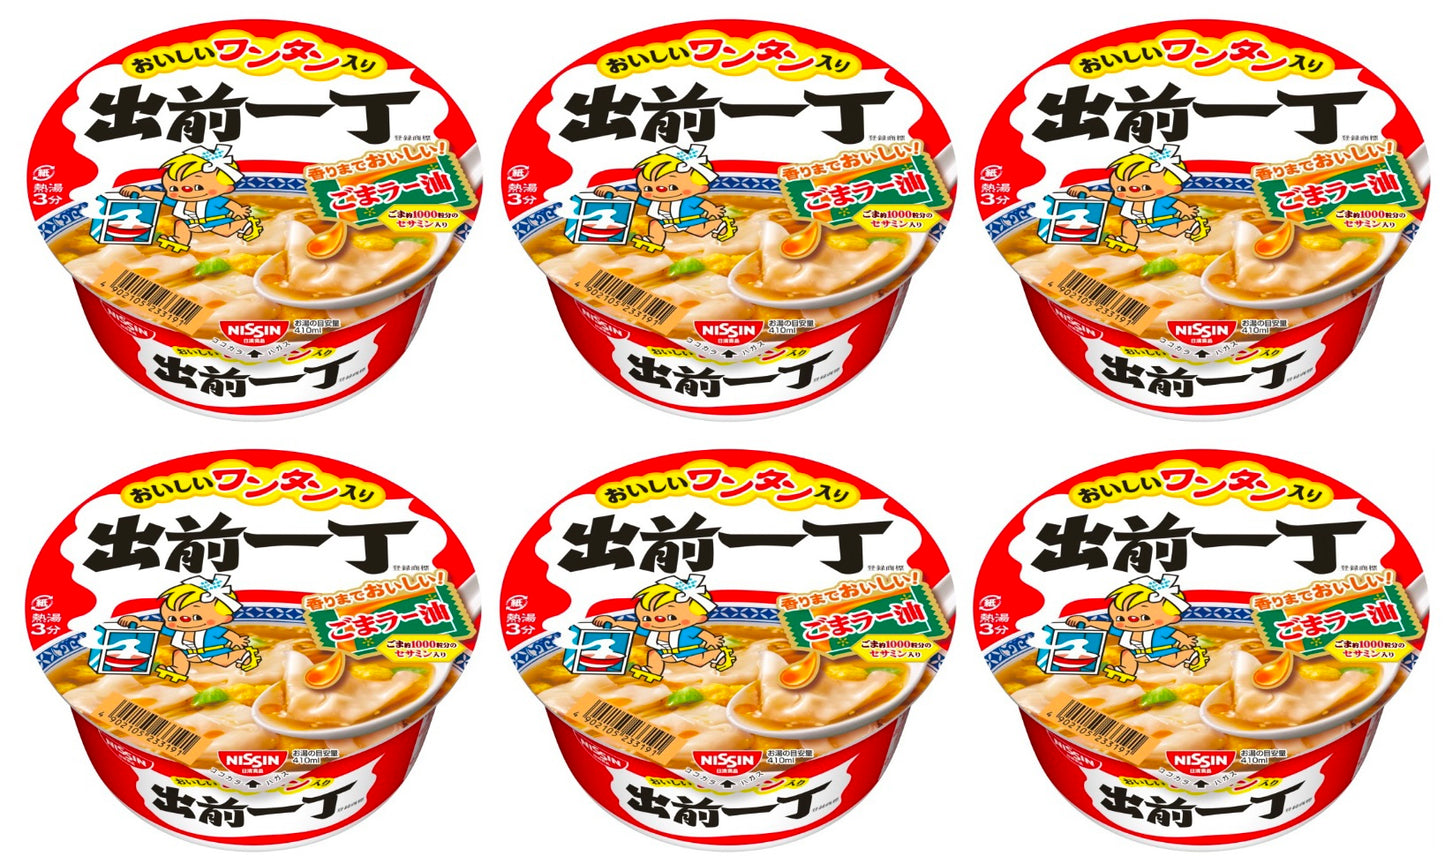 NISSIN Ramen Noodles Demae Wonton Soy Sauce Instant Food Soup Cup Japan 86g